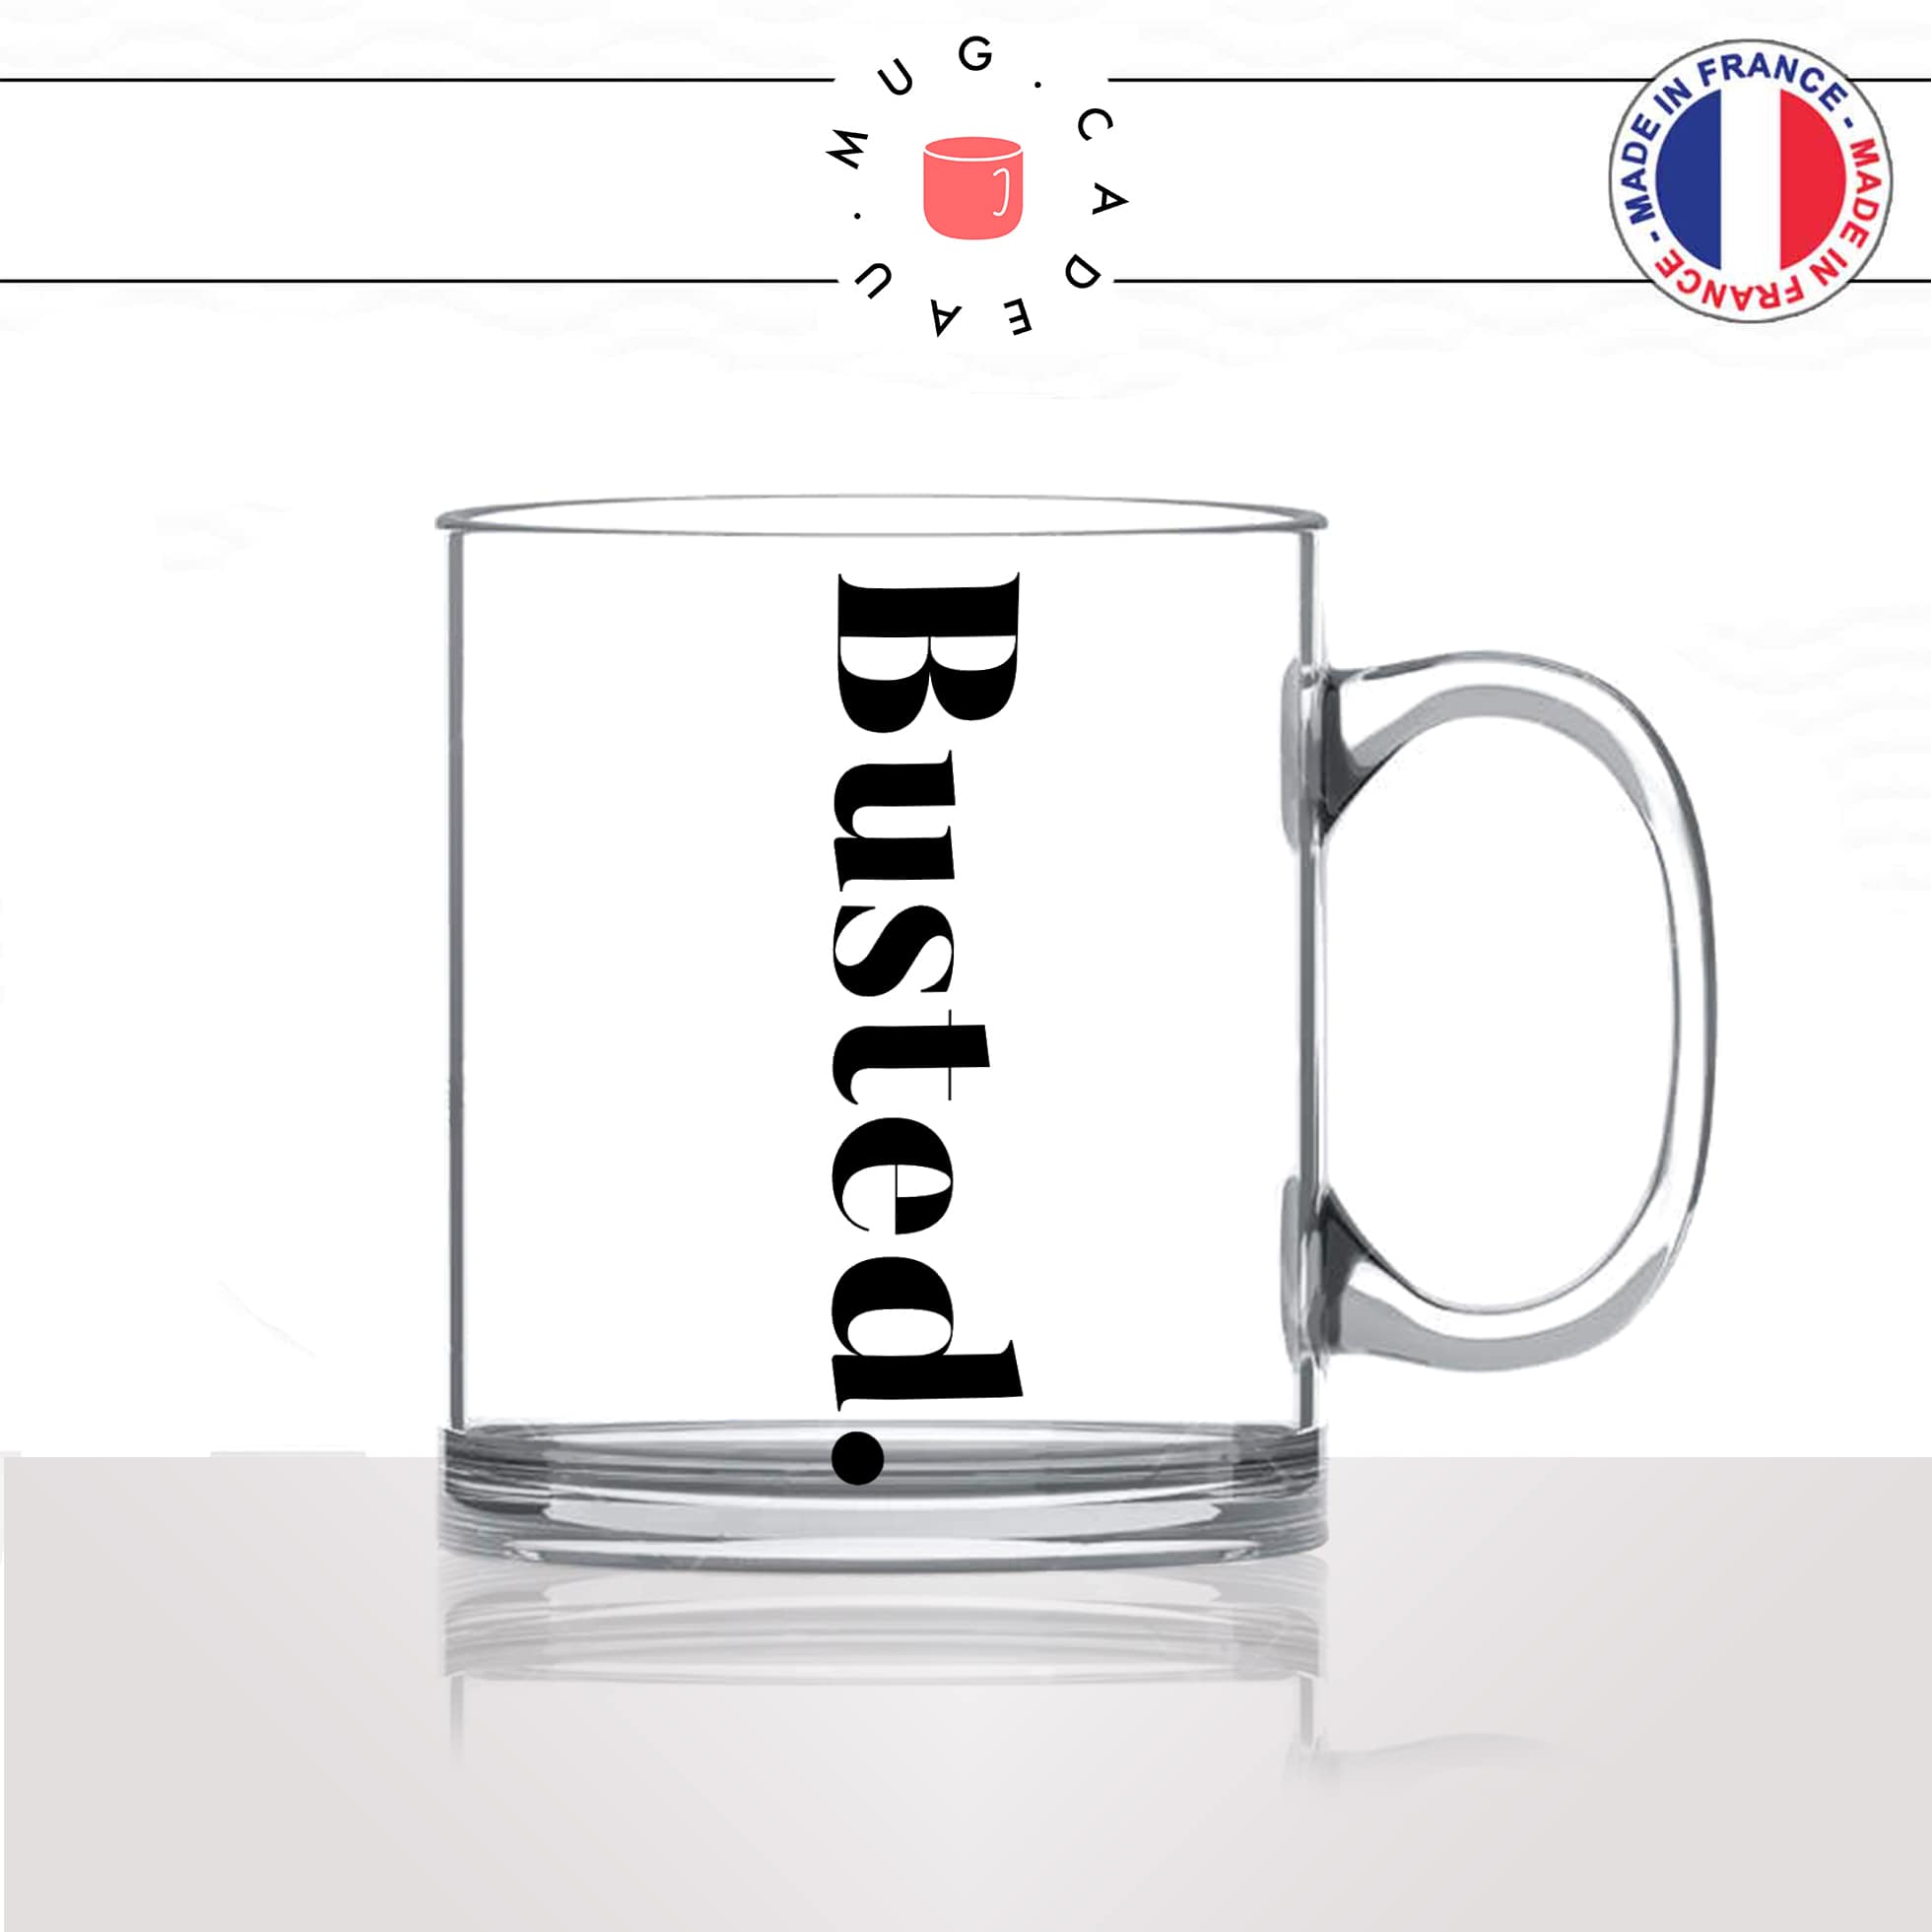 mug-tasse-en-verre-transparent-glass-busted-calligraphie-lettrine-mot-pris-sur-le-fait-anglais-décoration-ami-idée-cadeau-originale-personnalisé-café-thé2-min